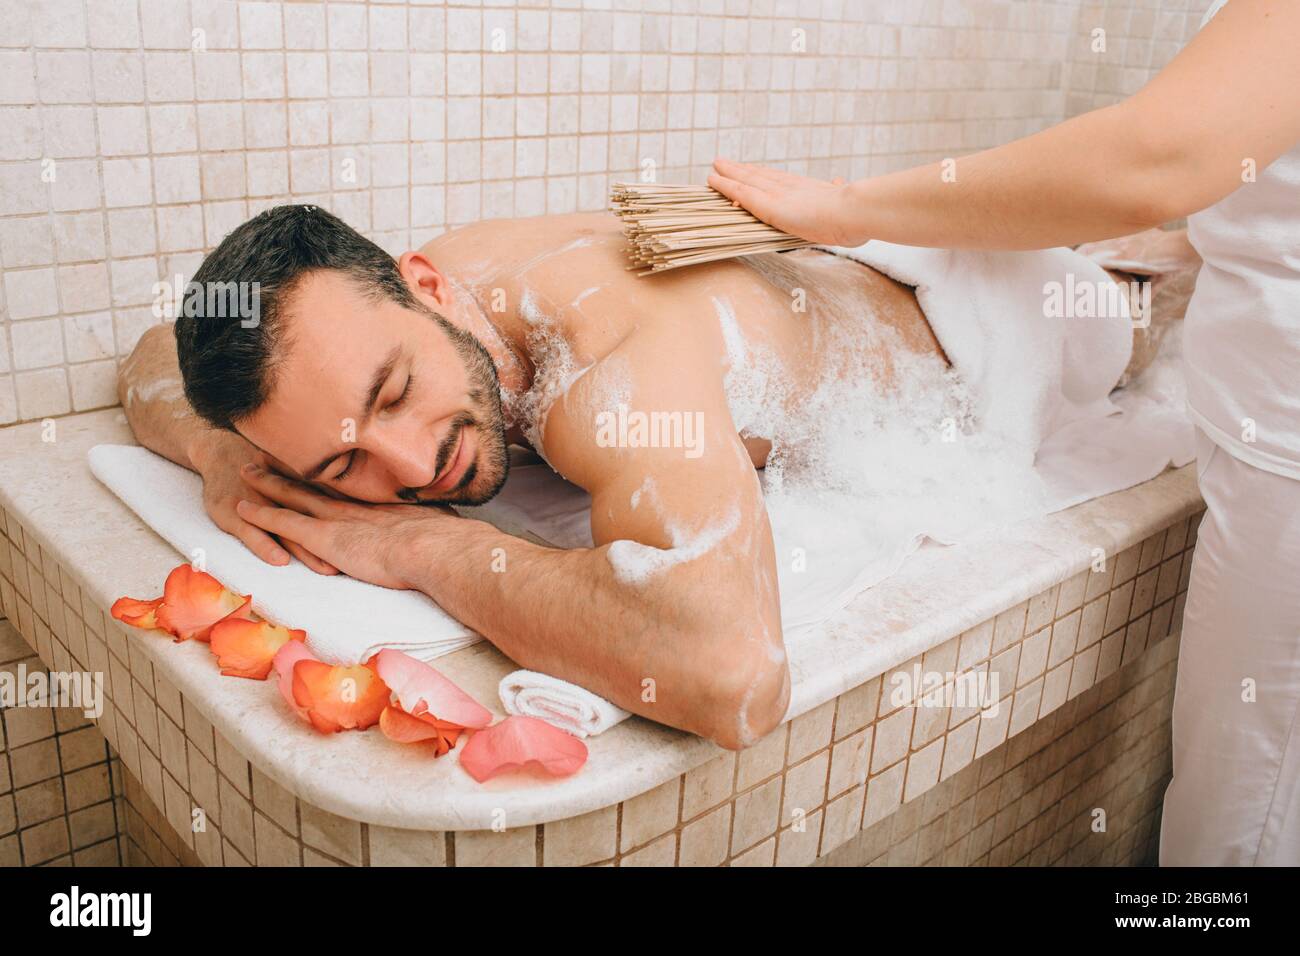 Un turc qui propose des massages avec balai en bambou dans un bain turc. Hammam lave la peau des hommes. Massage en mousse Banque D'Images